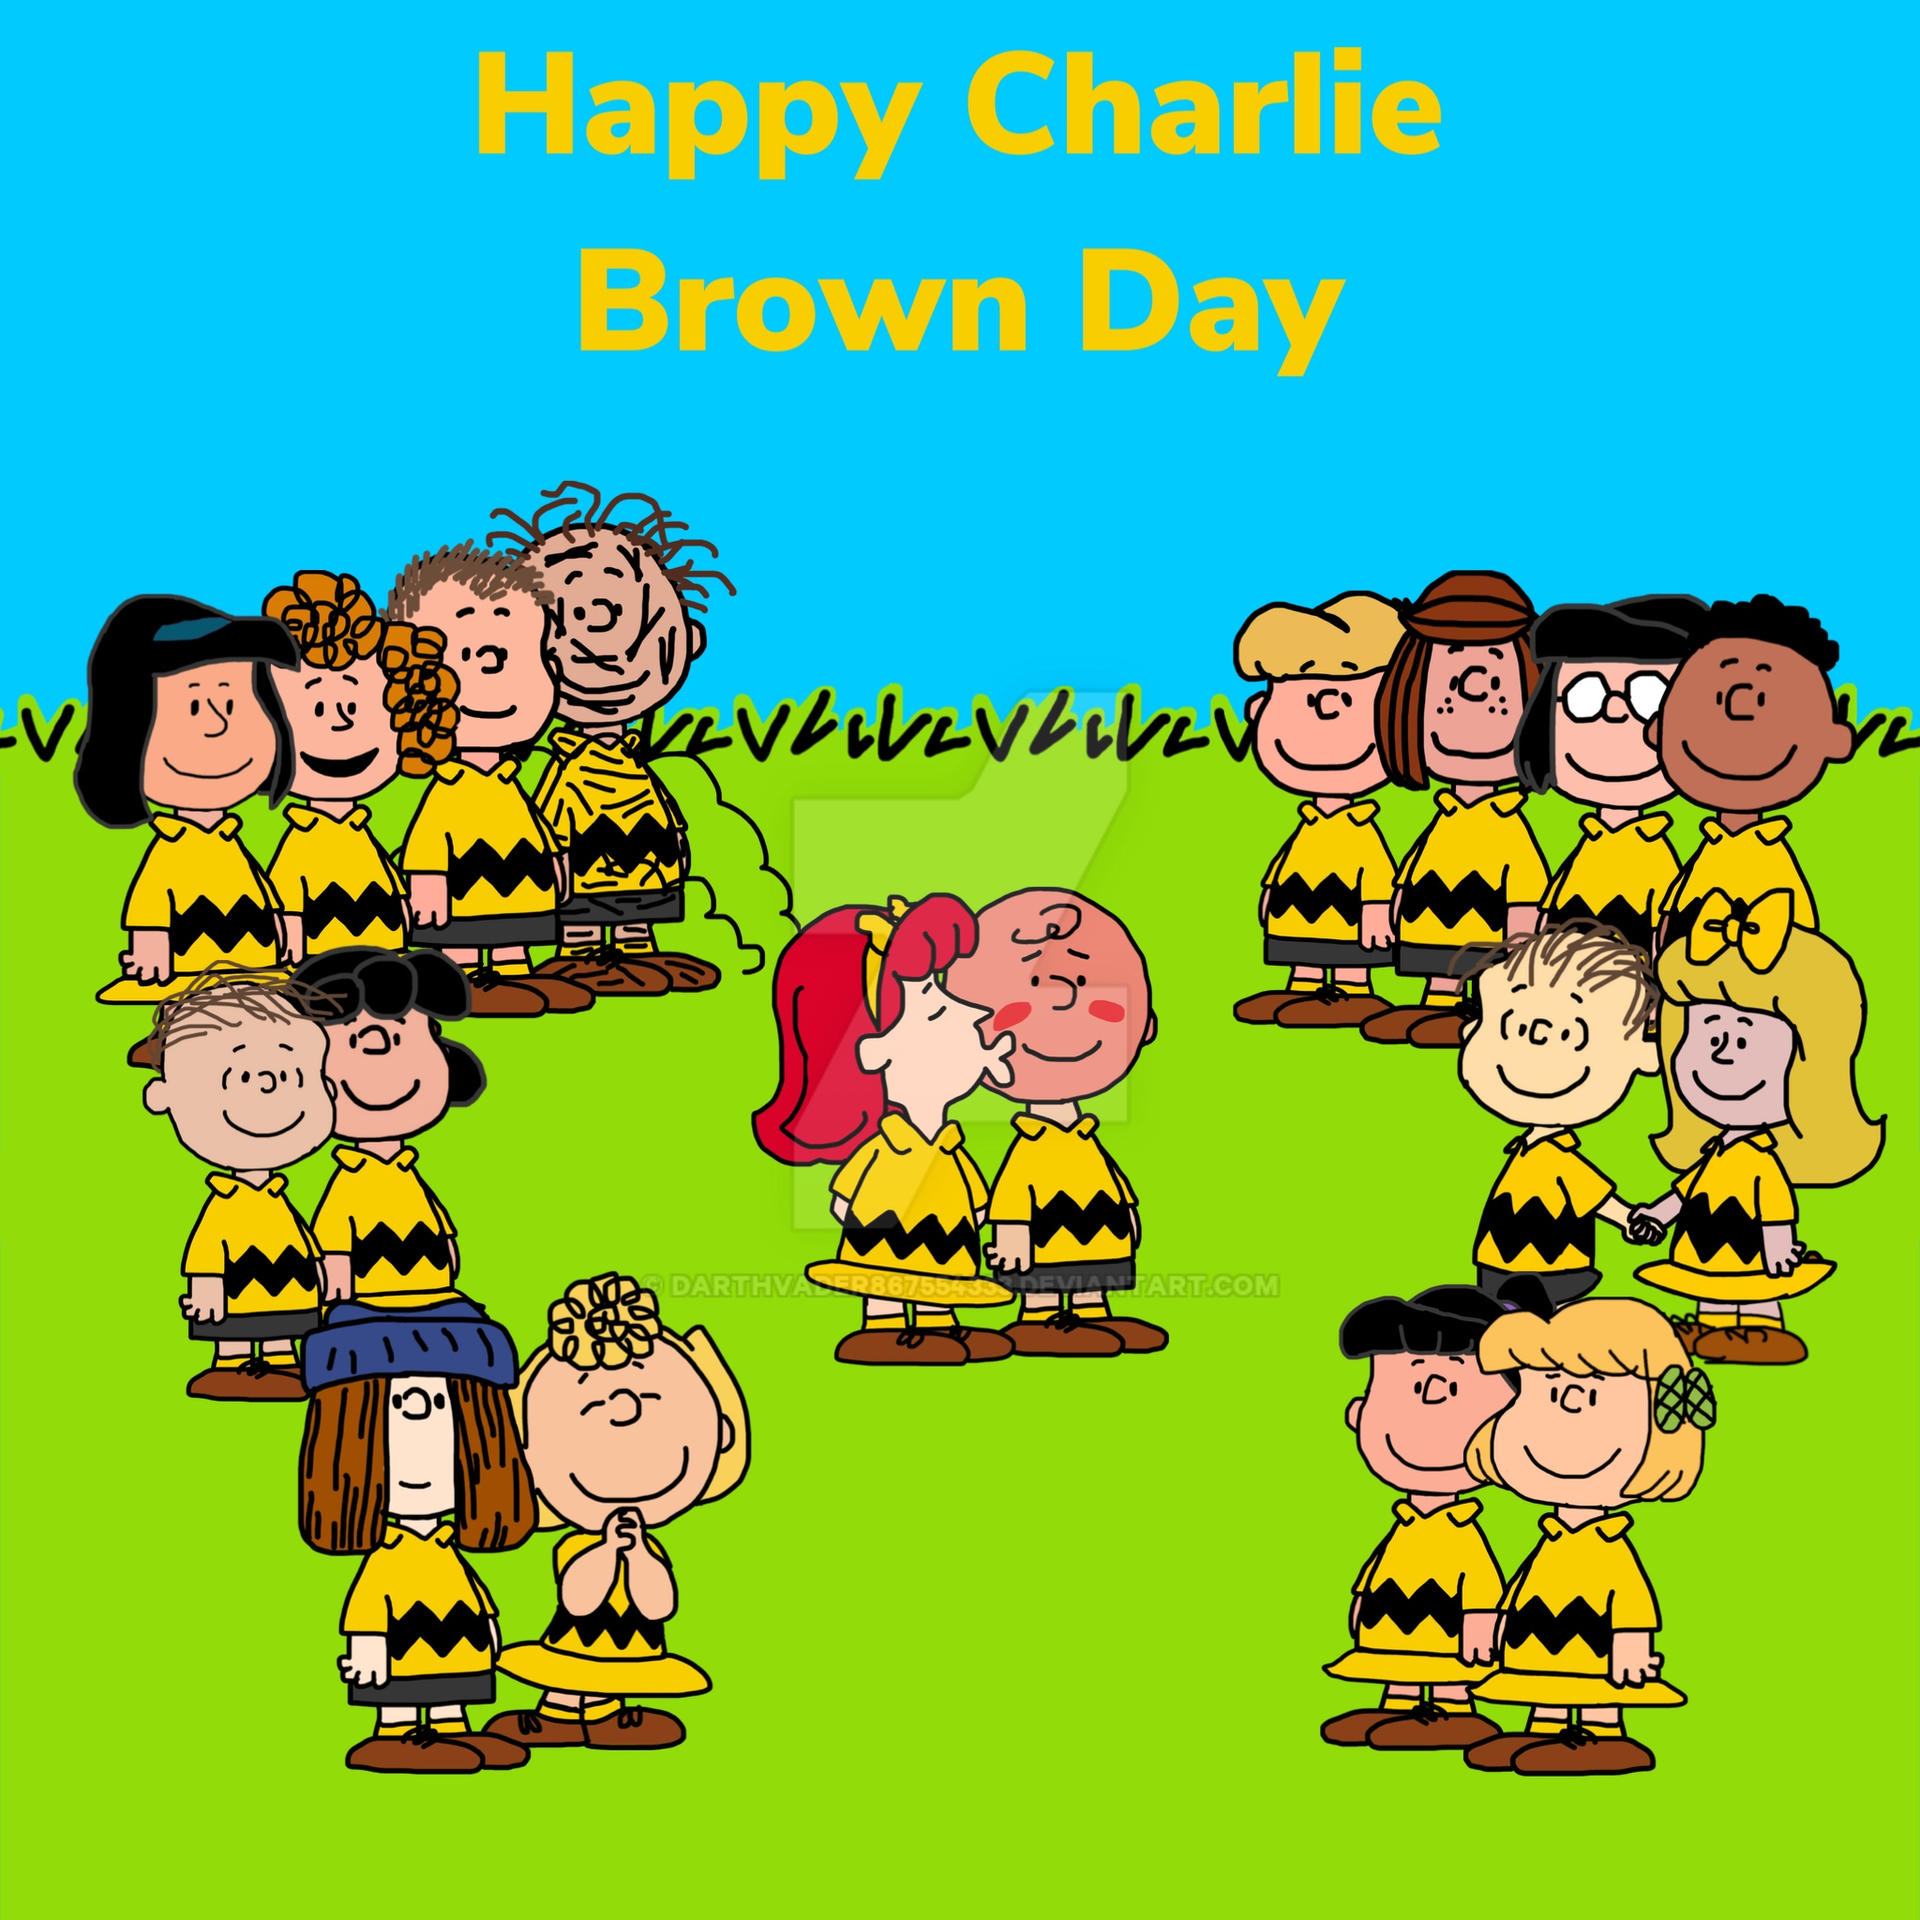 Happy Charlie Brown Day by DarthVader867554333 on DeviantArt